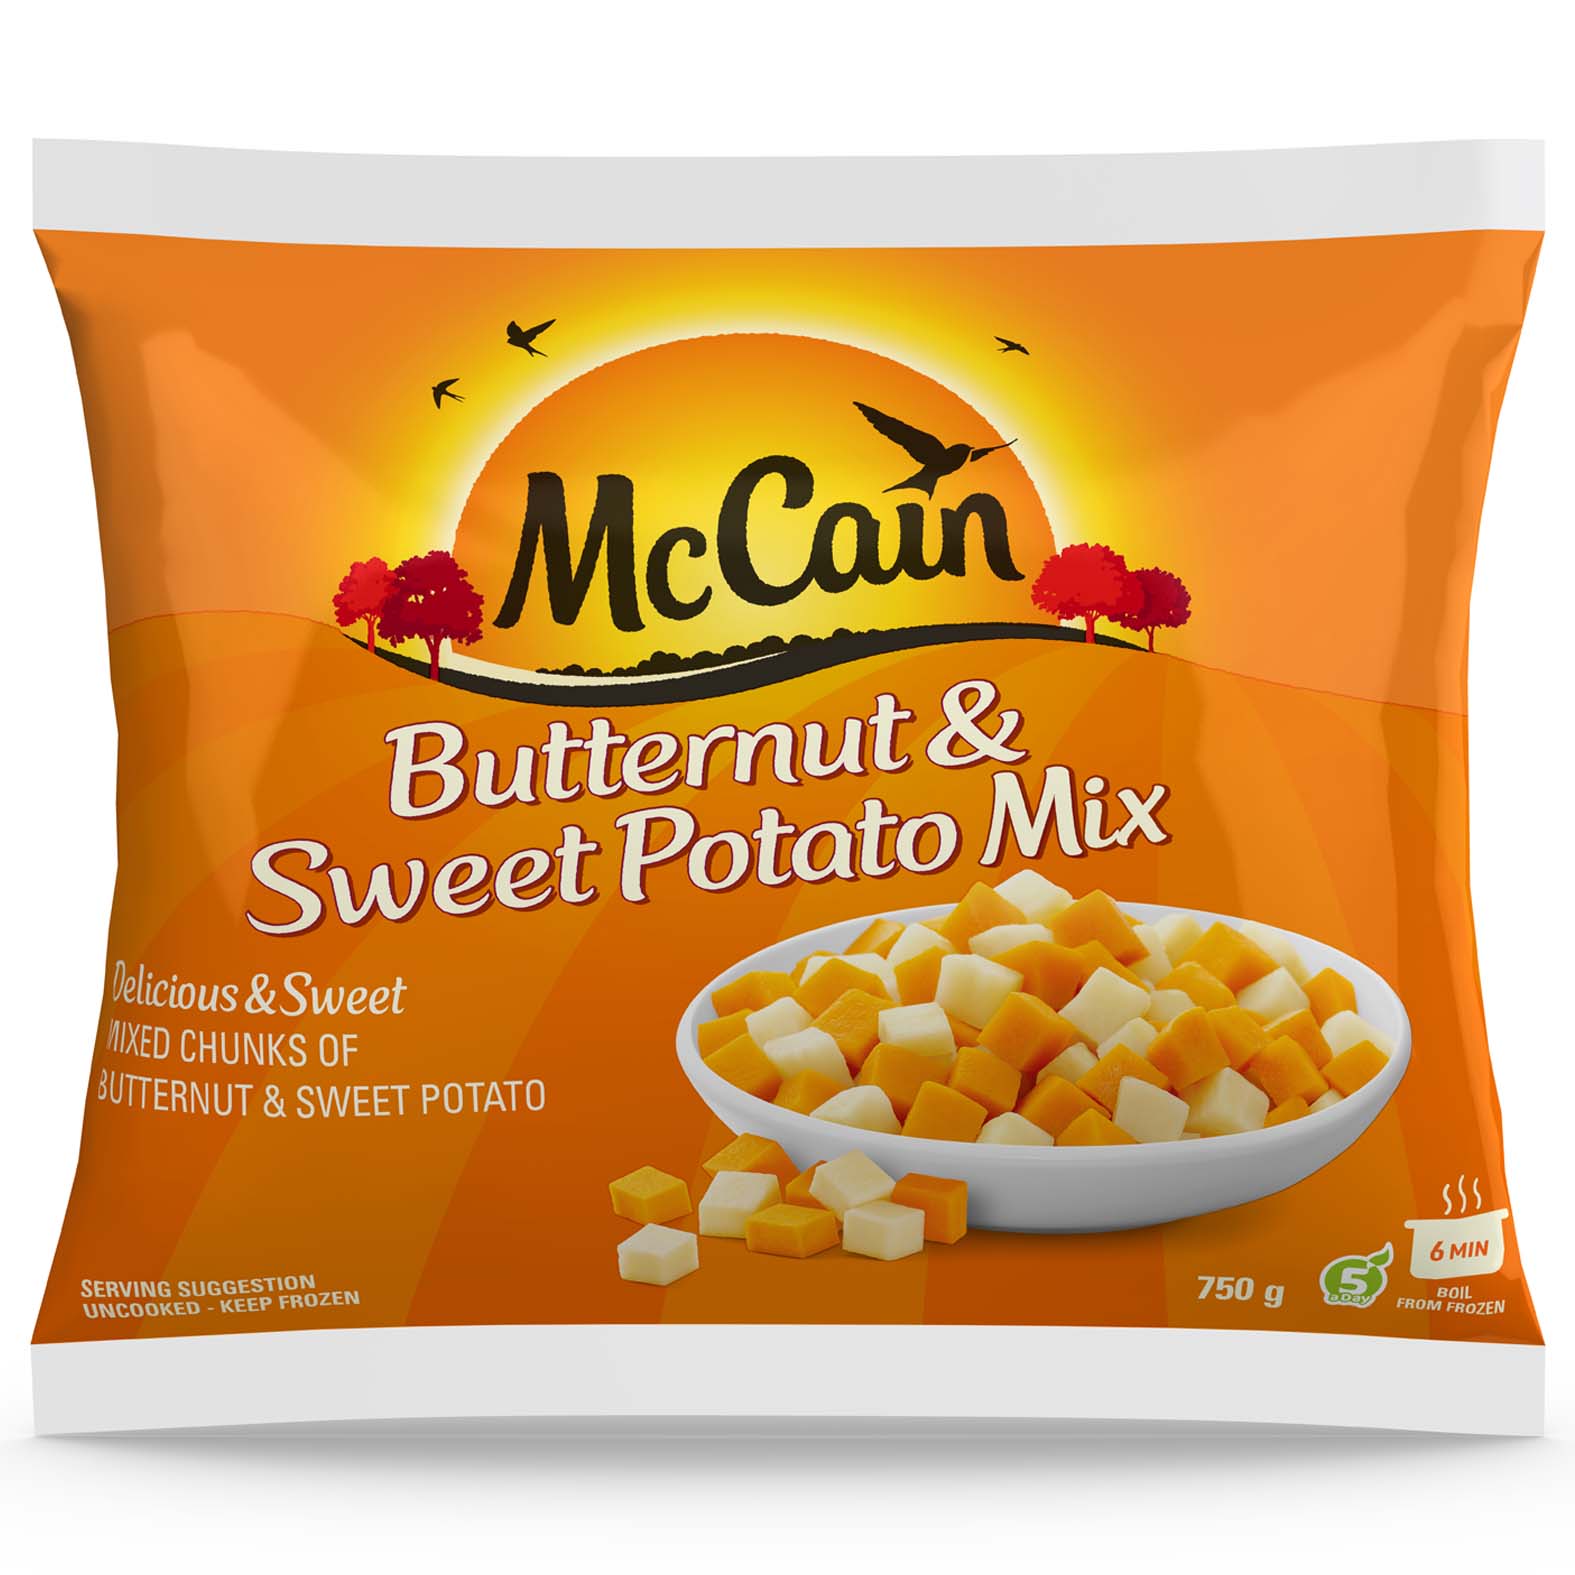 Butternut & Sweet Potato Mix 750g